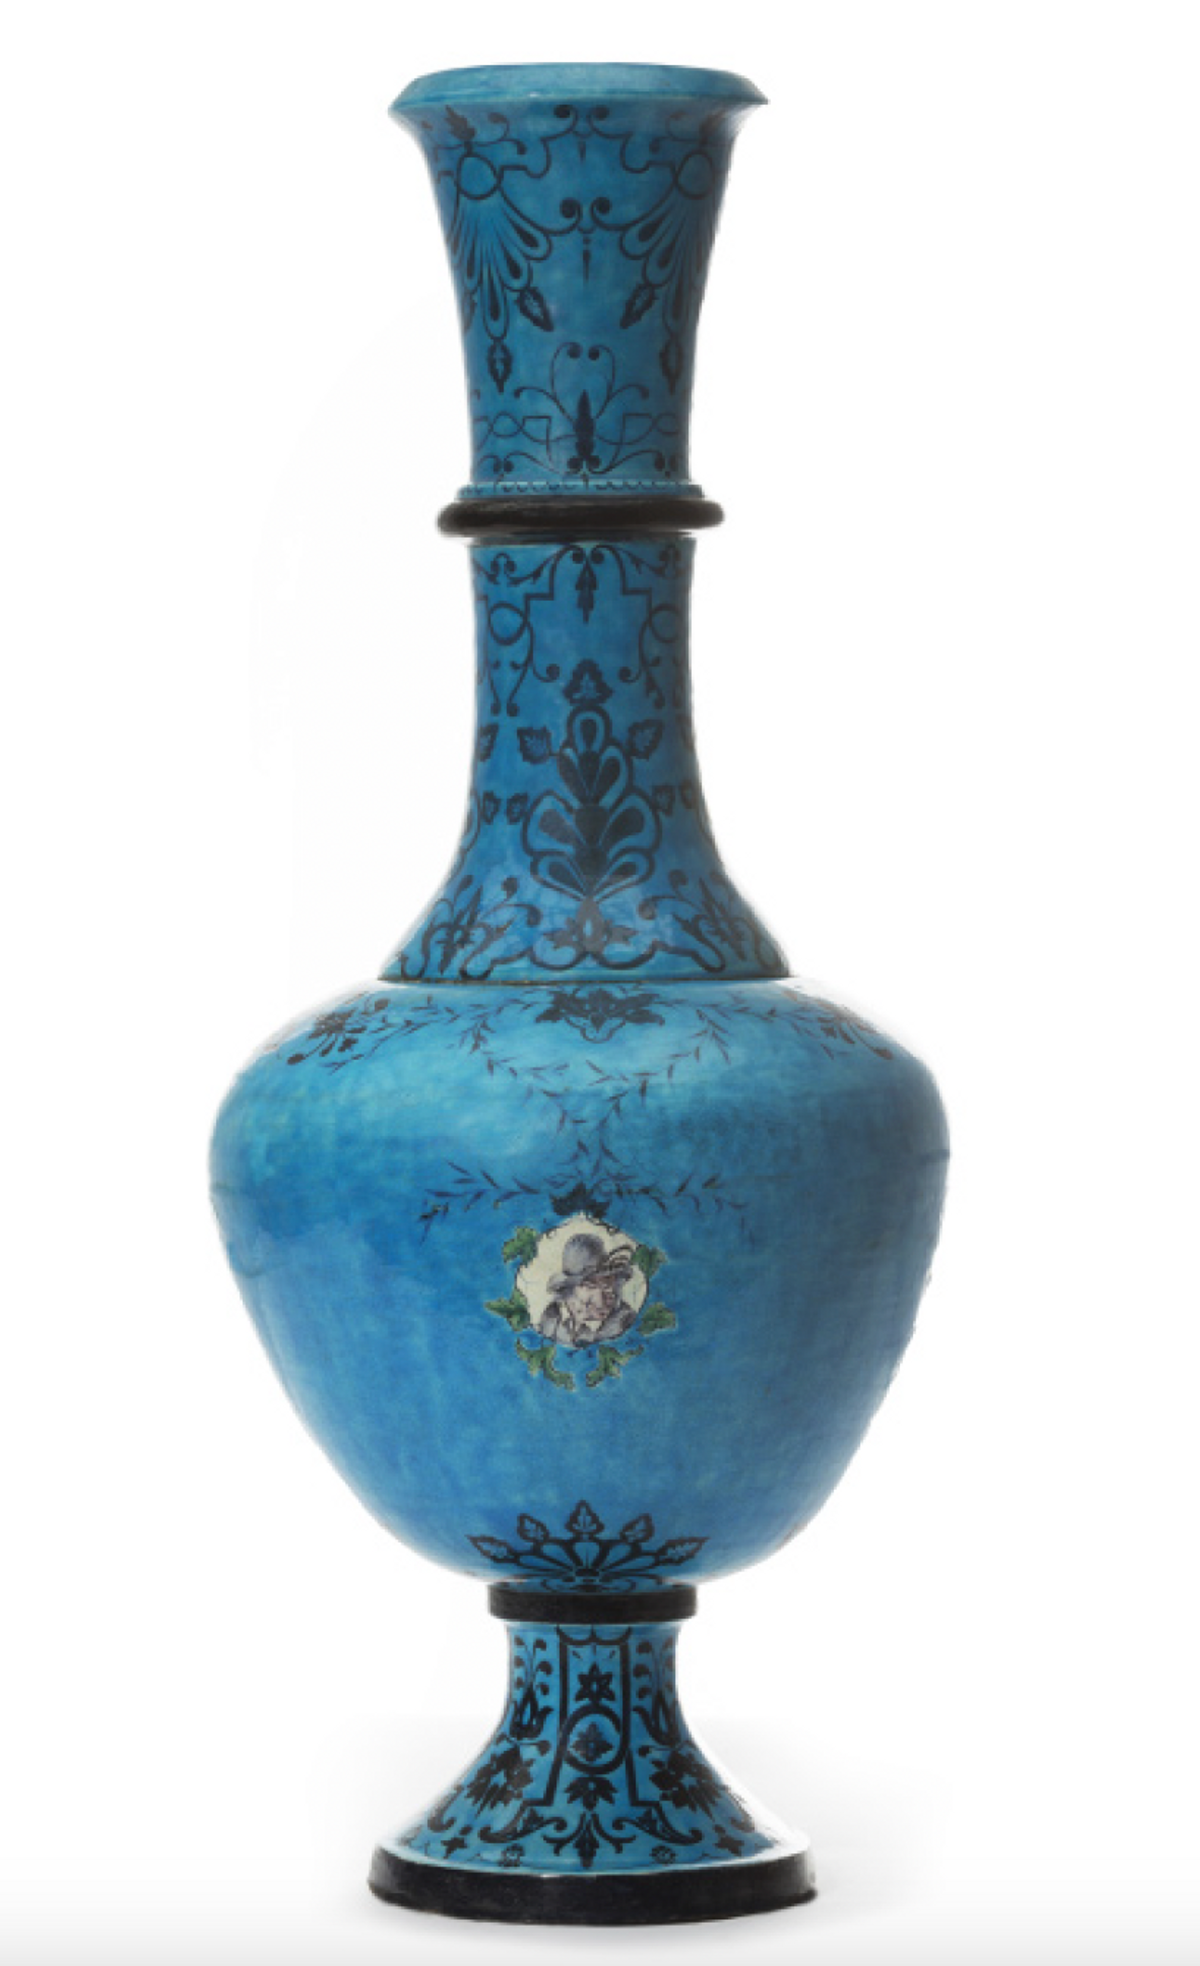 Grand vase bleu turquoise à décor de style persan, signé « Doré », v. 1865. Courtesy Galerie Vauclair